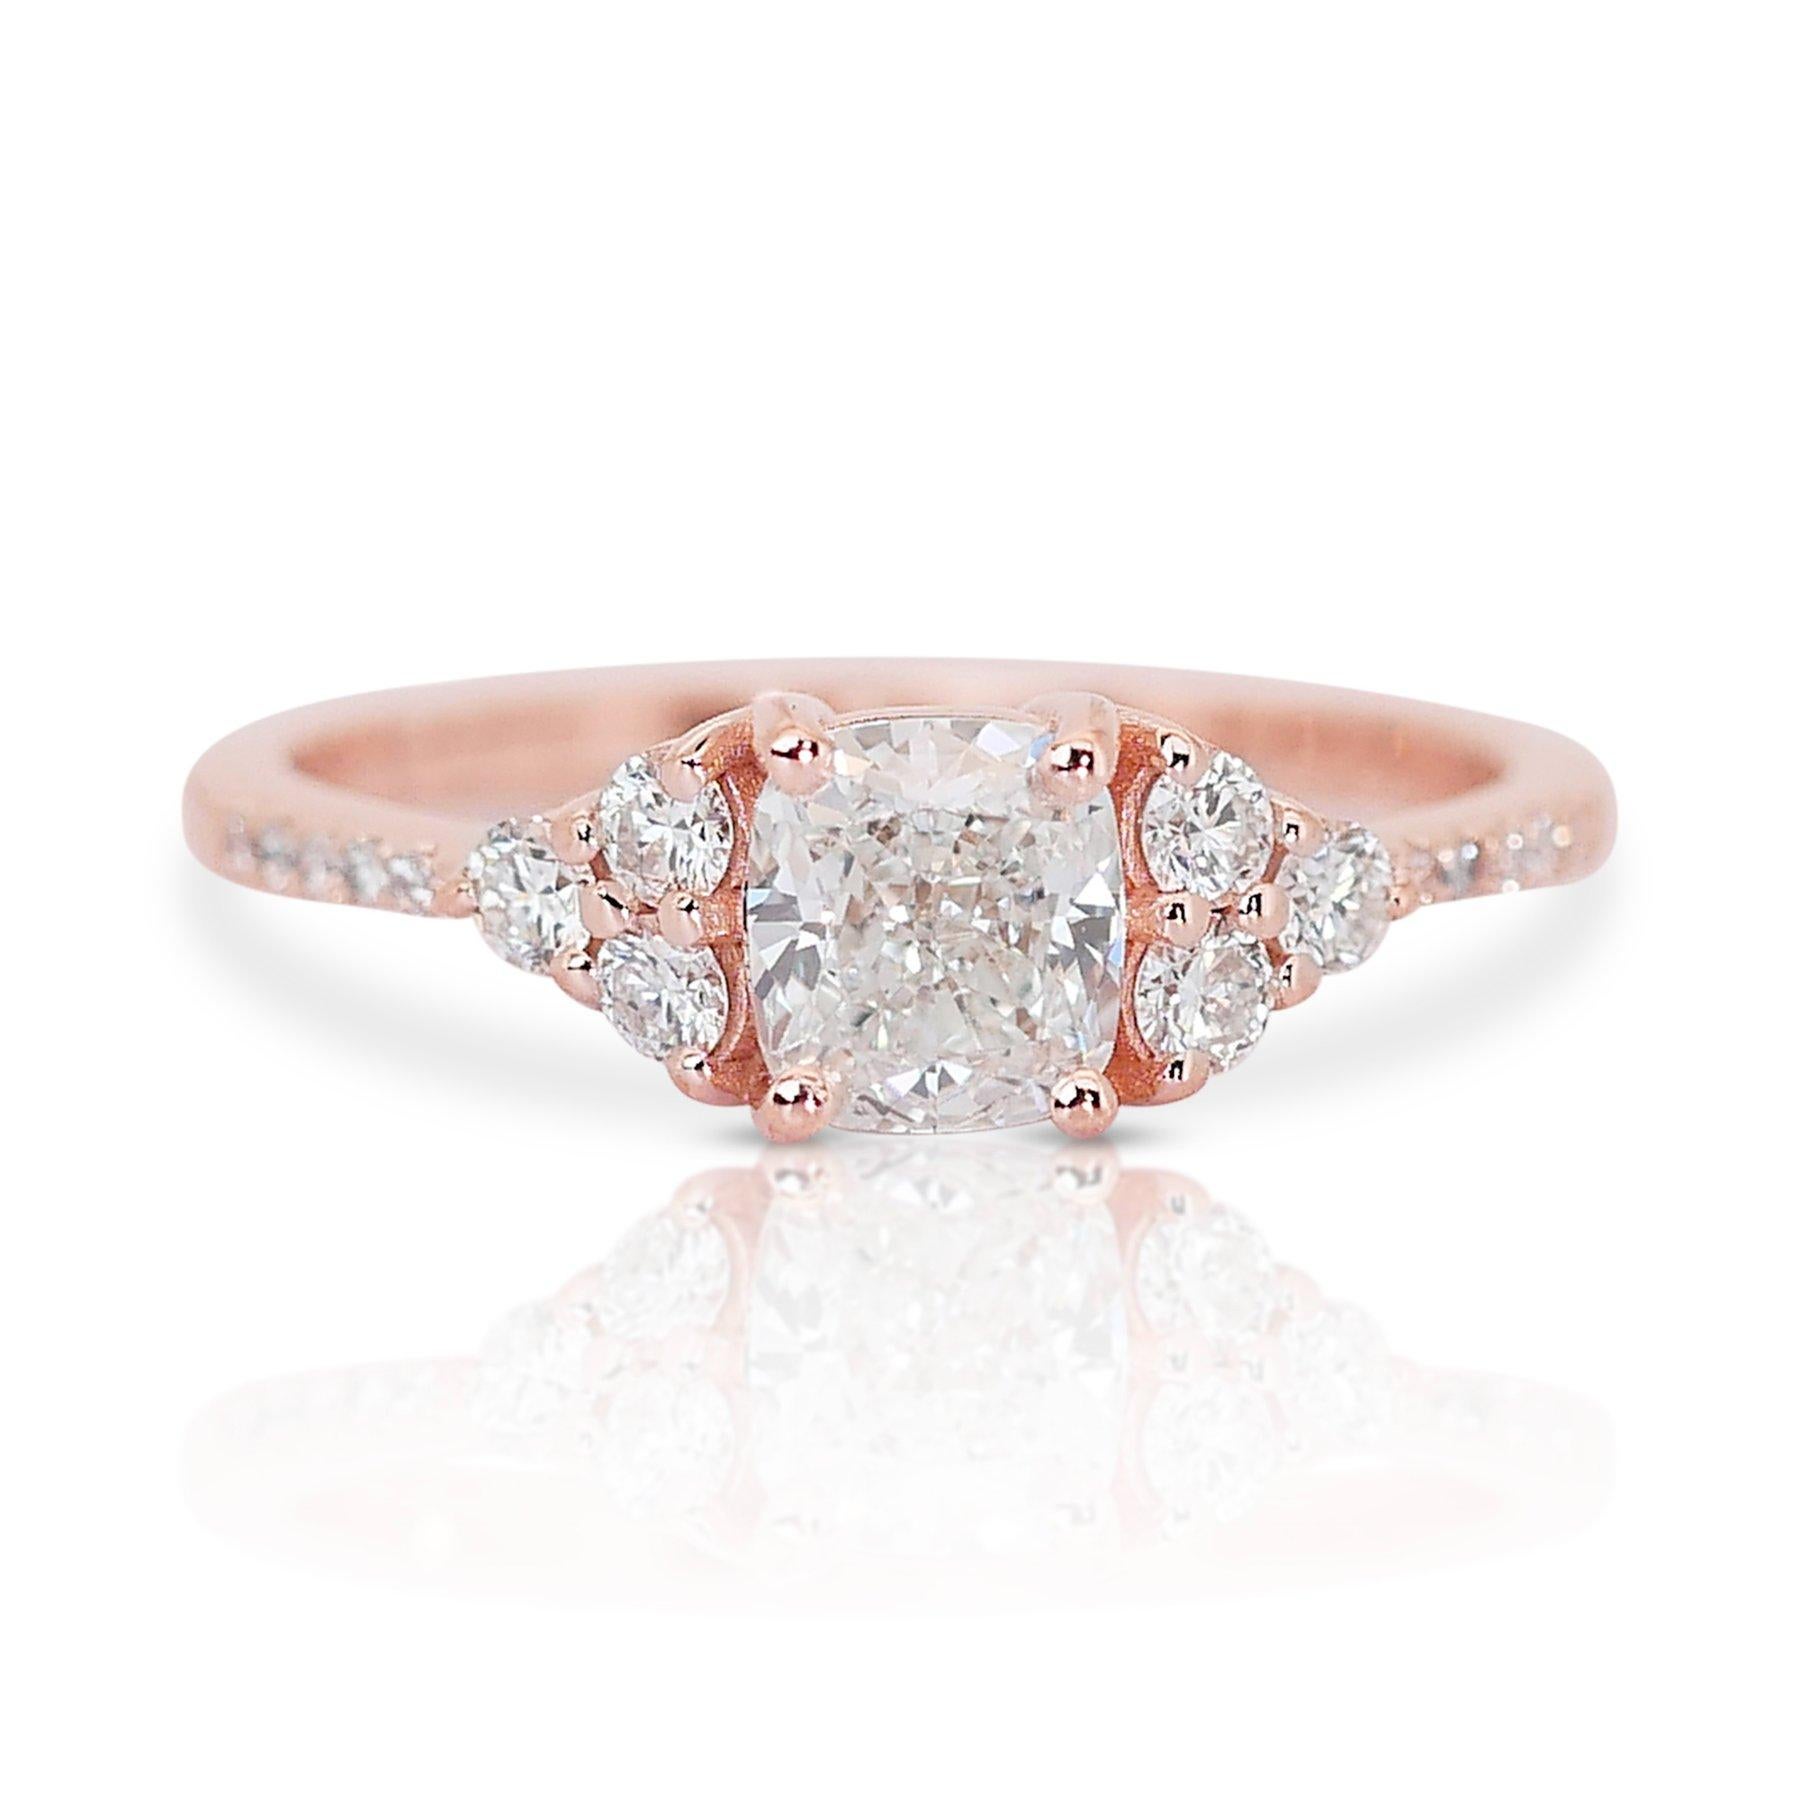 Enchanting 1.29ct Diamond Pave Ring in 18k Rose Gold - GIA Certified 3